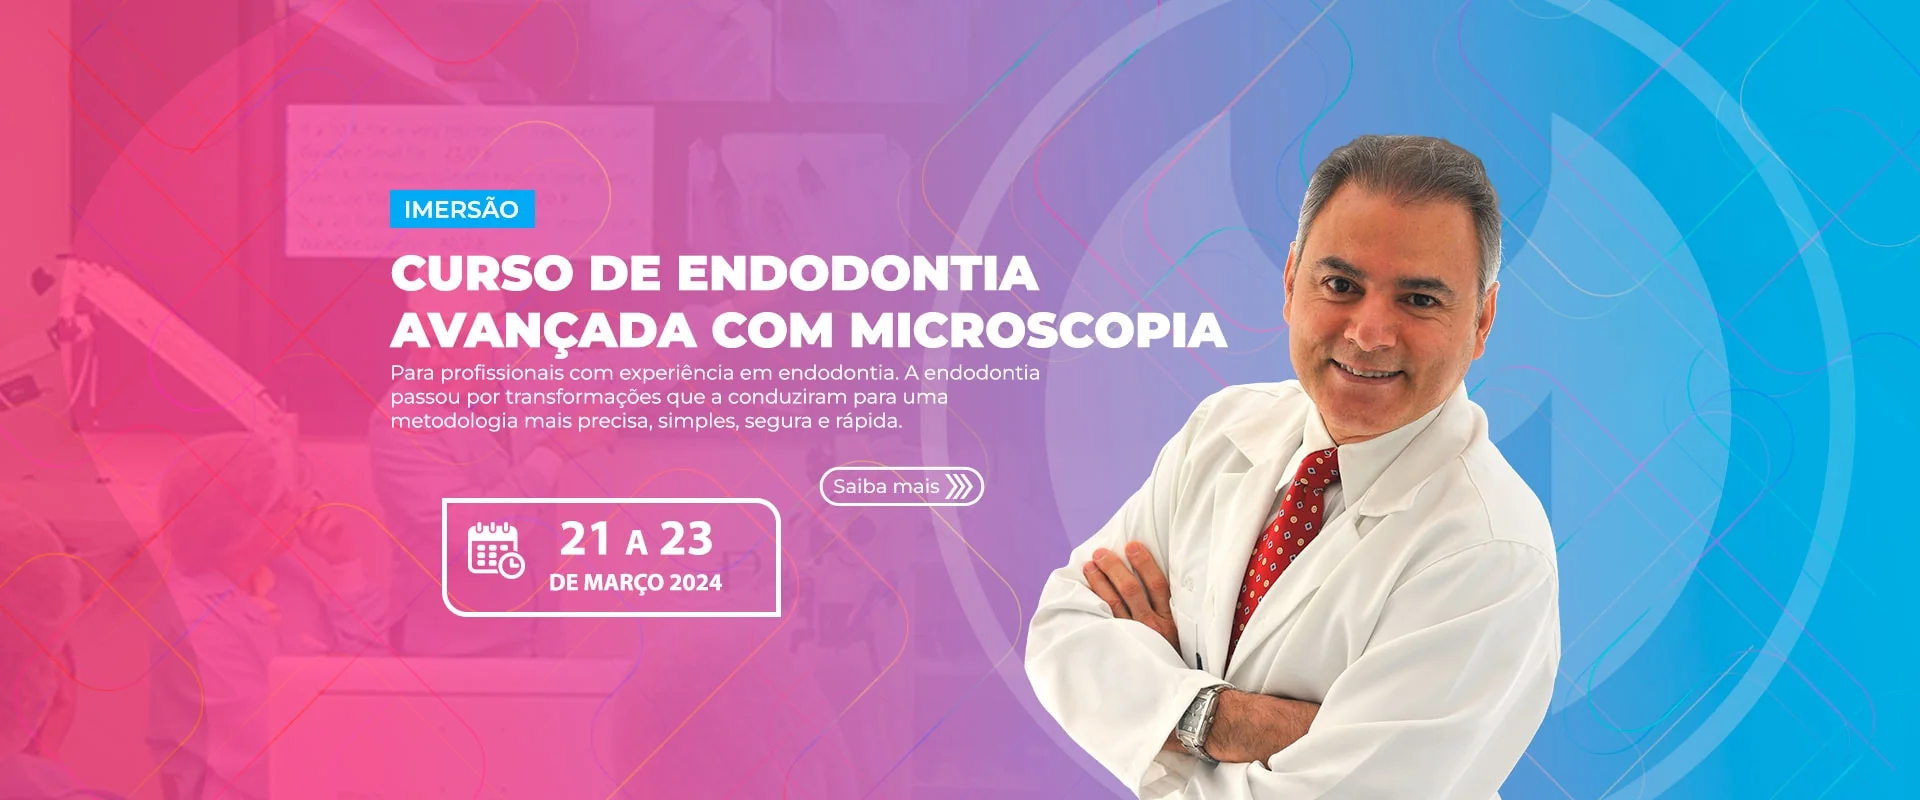 19.02.24 - Curso de Endodontia Avançada com Microscopia - Imersão